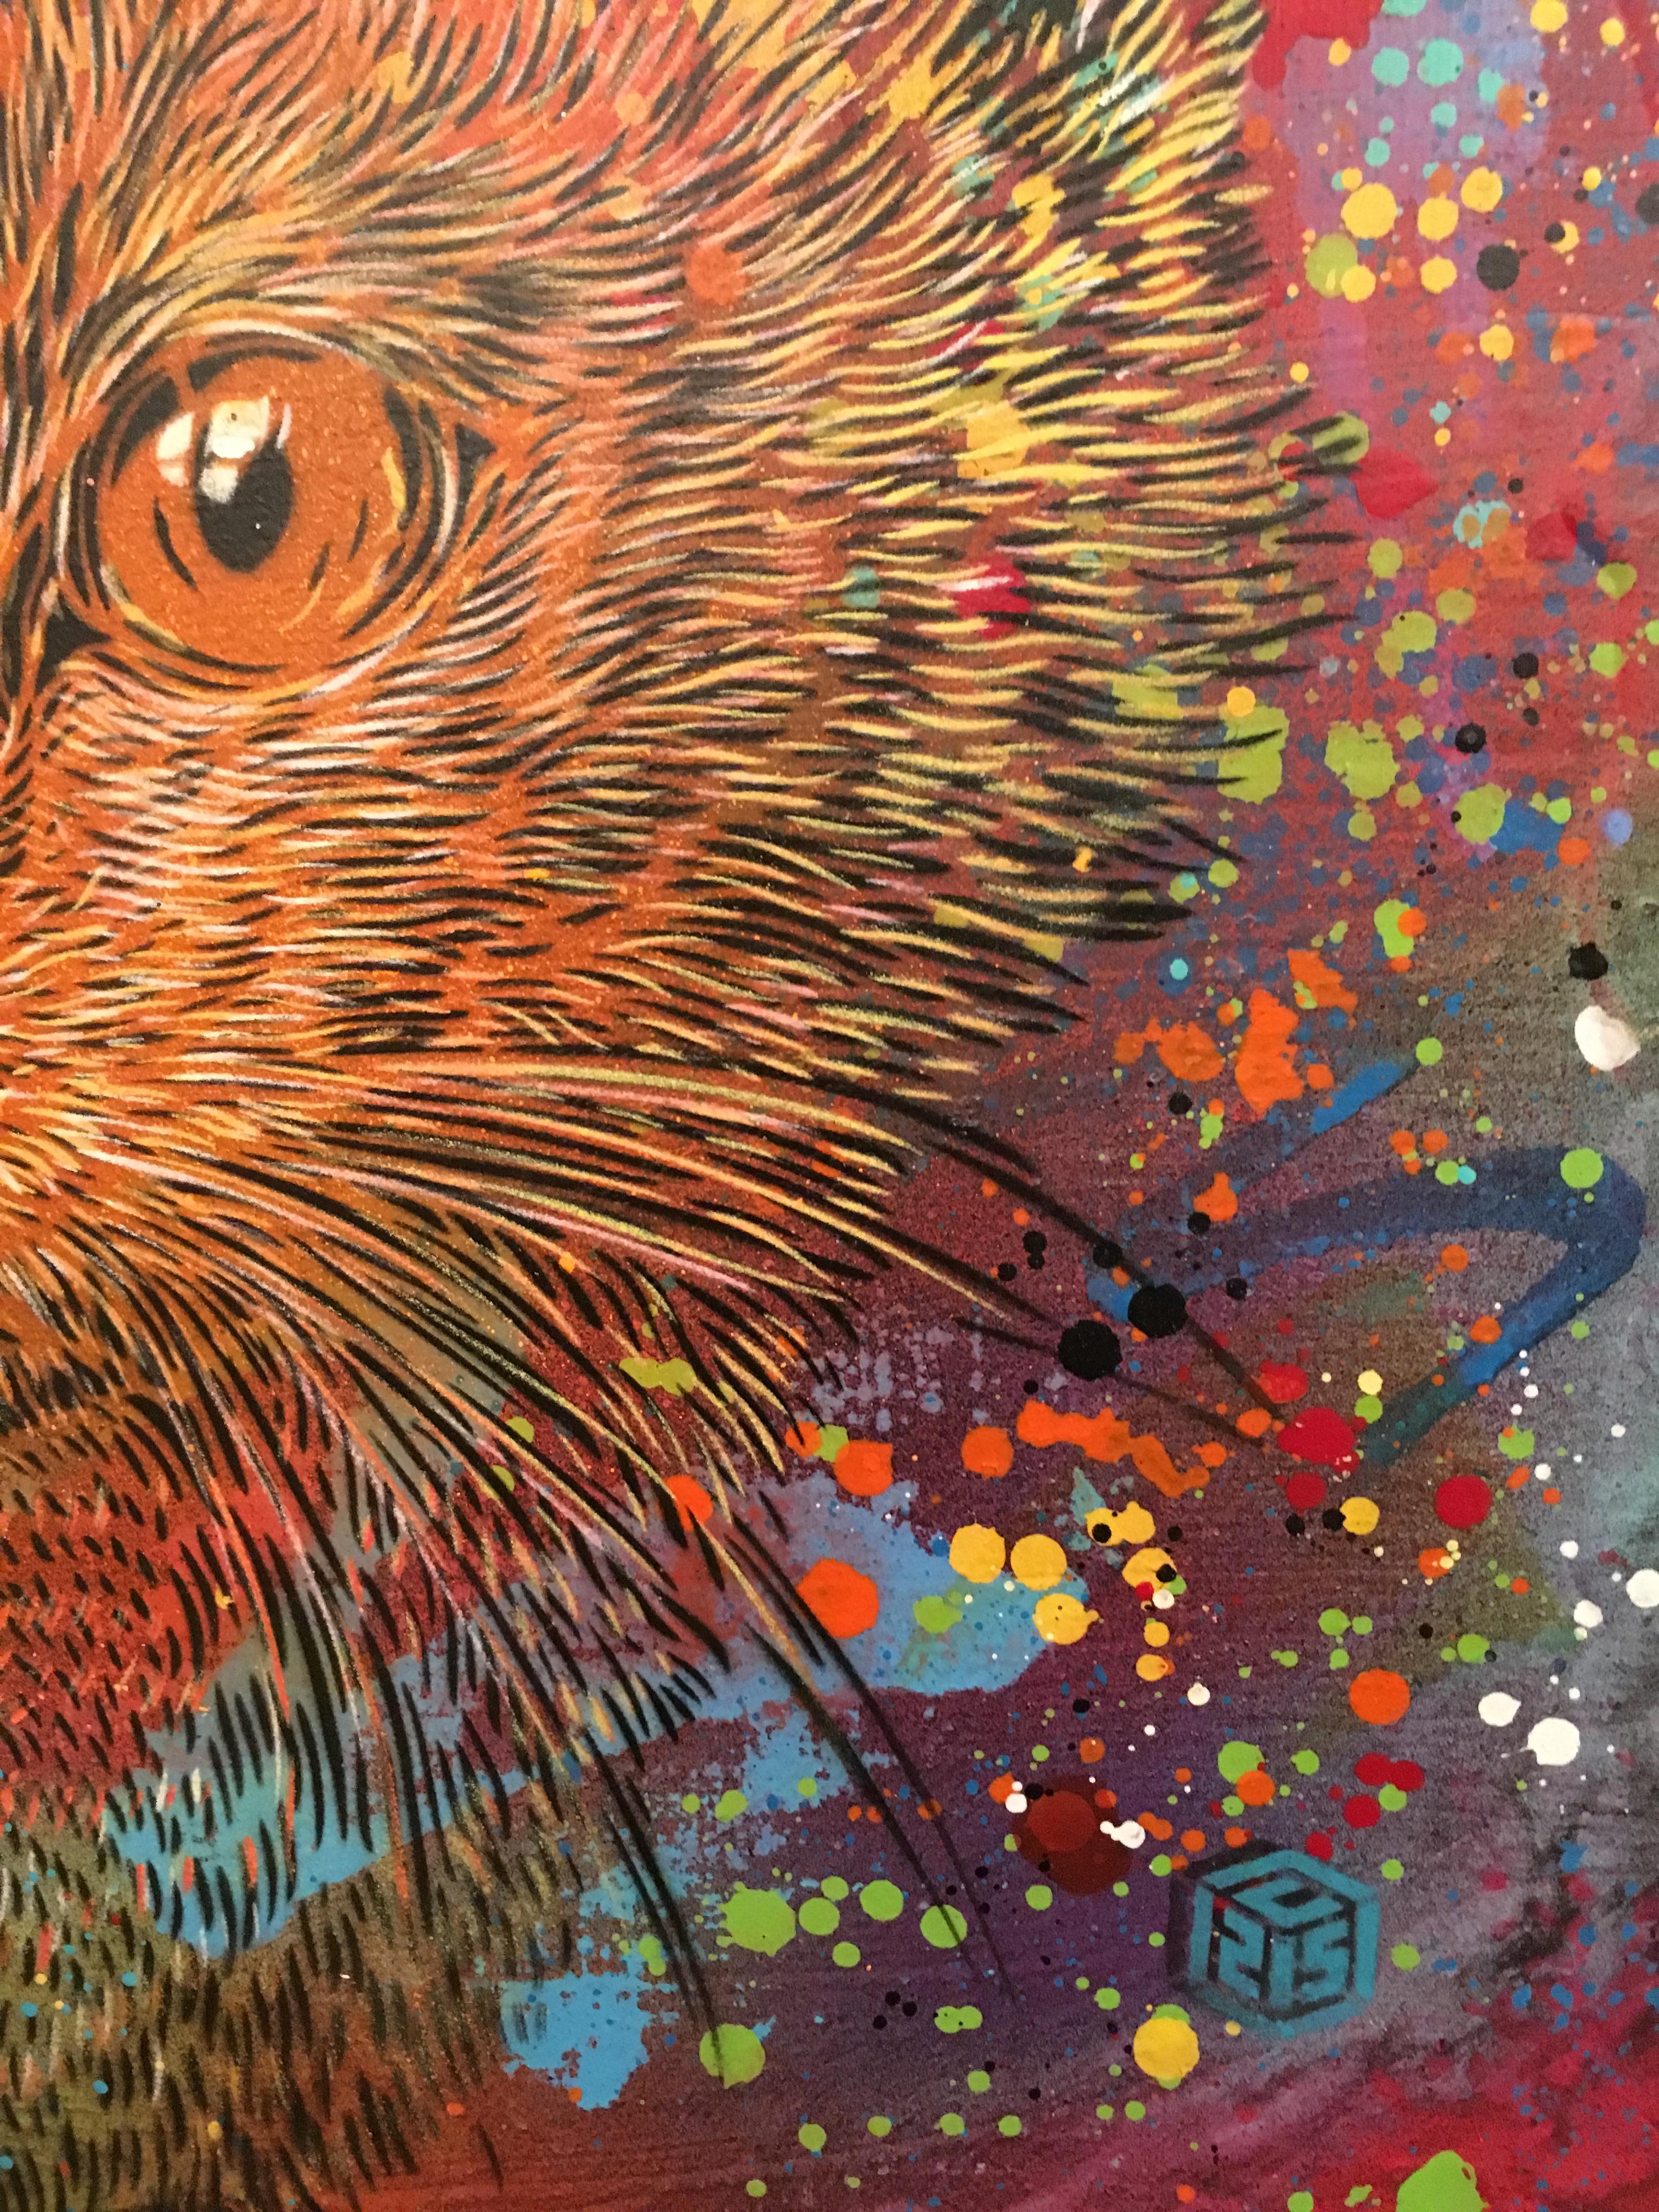 Wild Cat - Street Art Art by C215 (Christian Guemy)